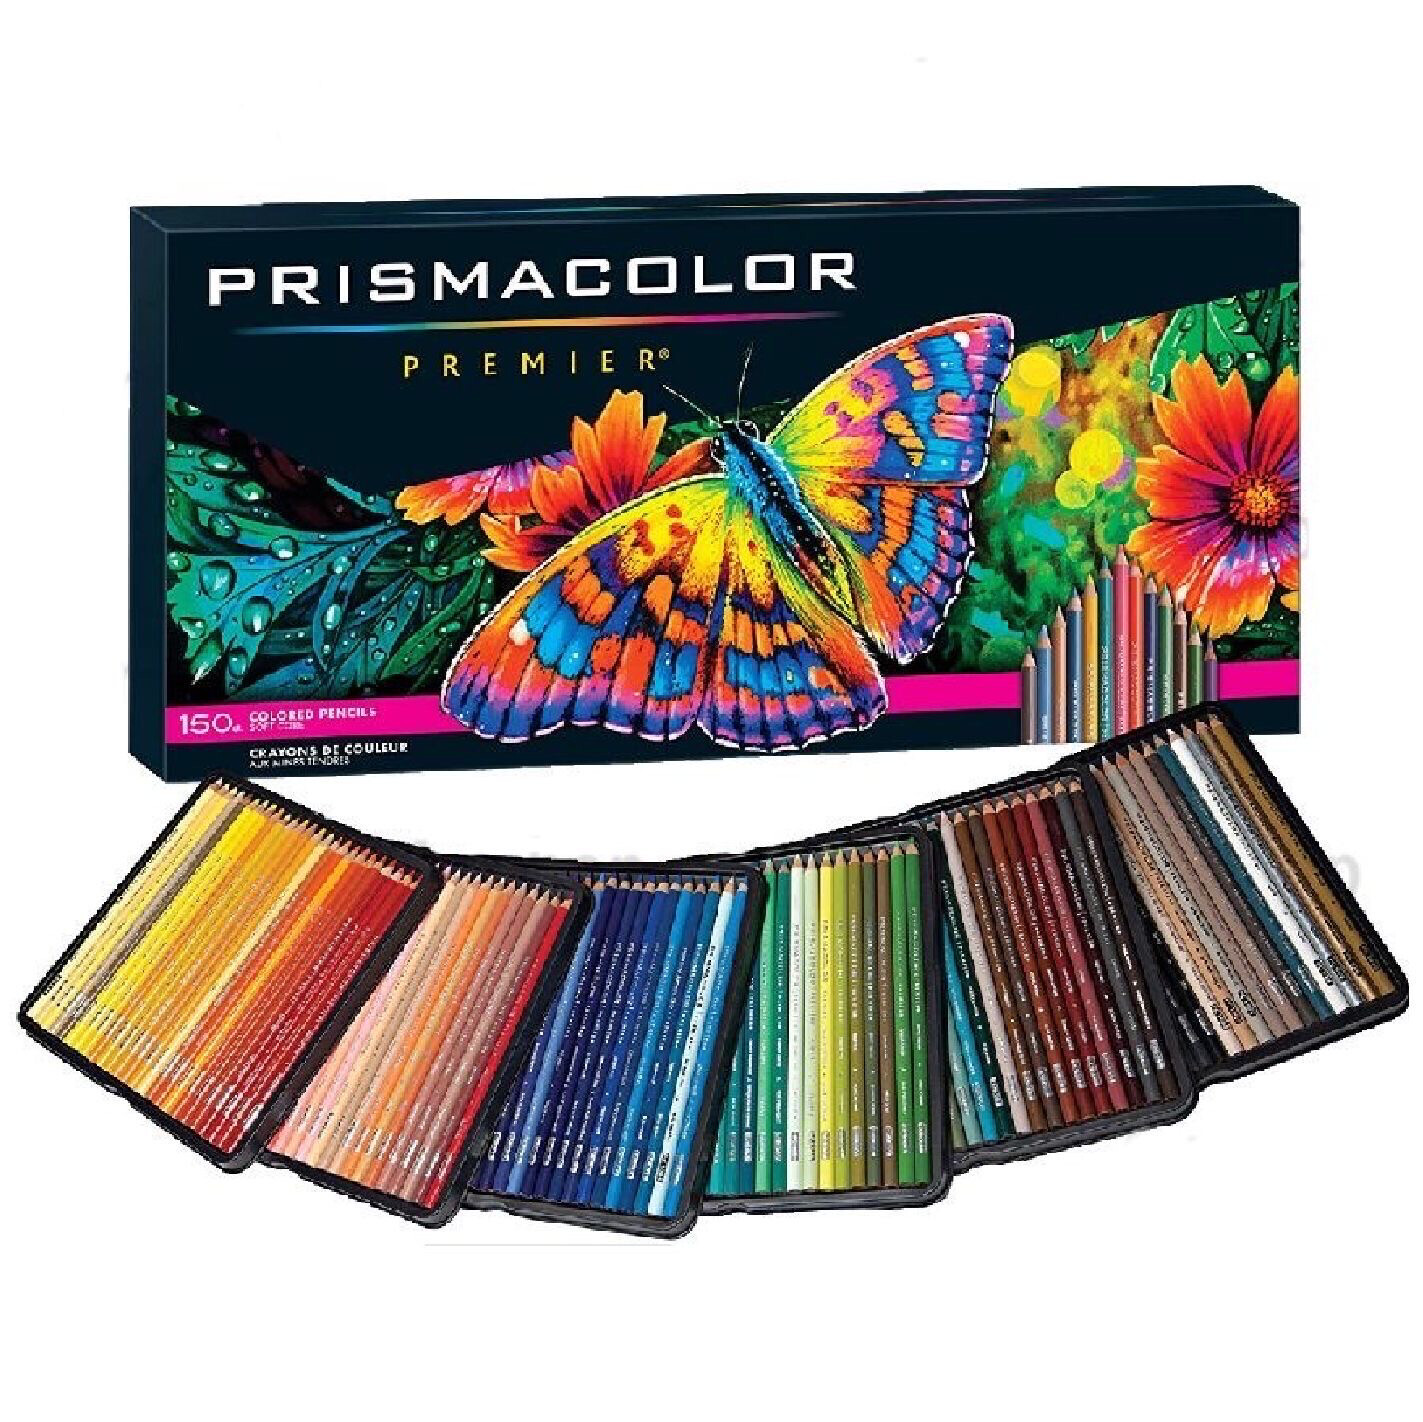 Prismacolor Premier de 150 Pzas.